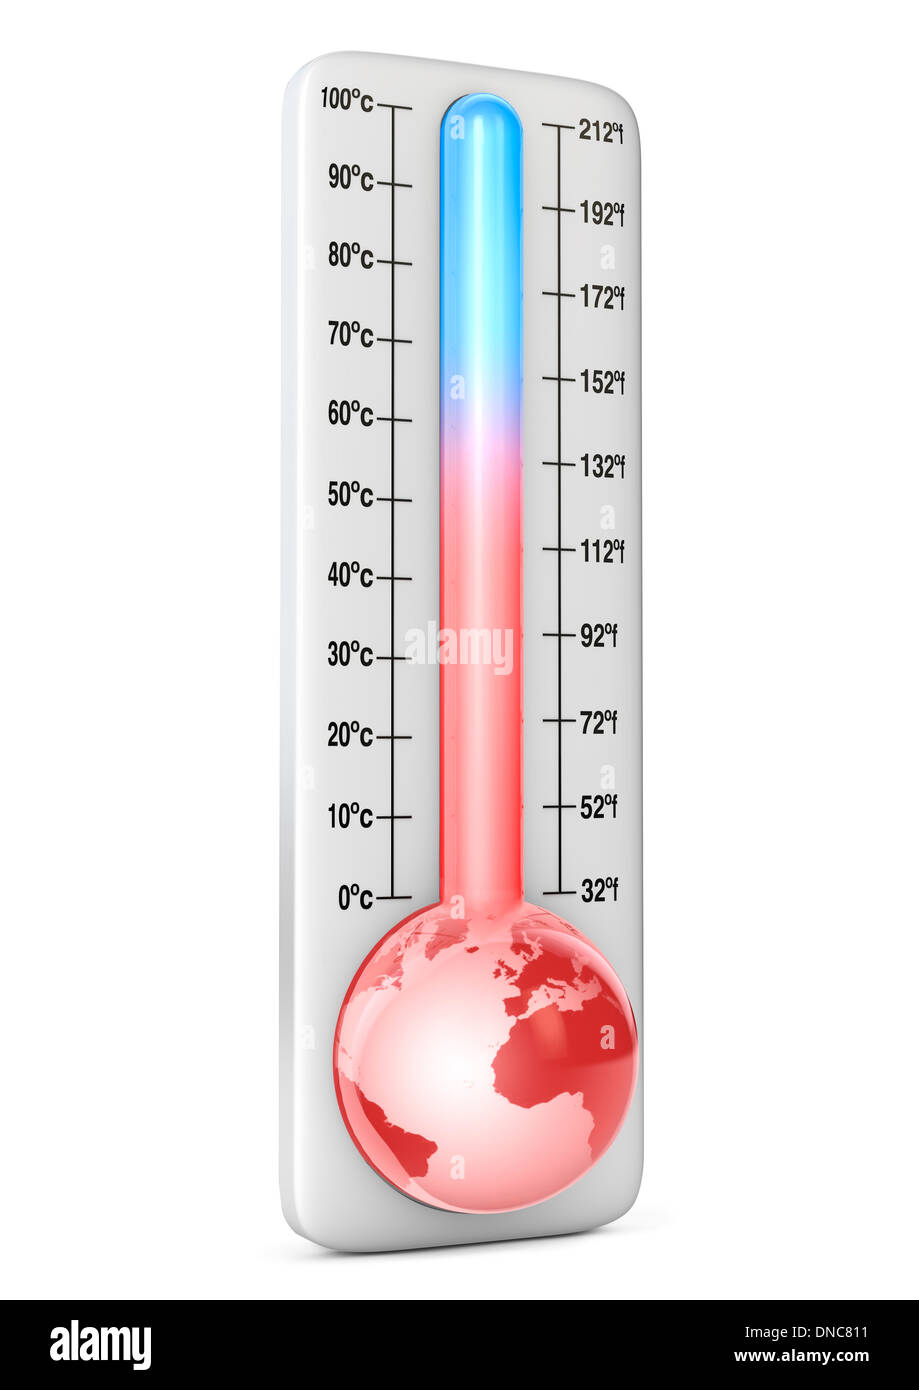 El calentamiento global - concepto ilustrado con termómetro Foto de stock